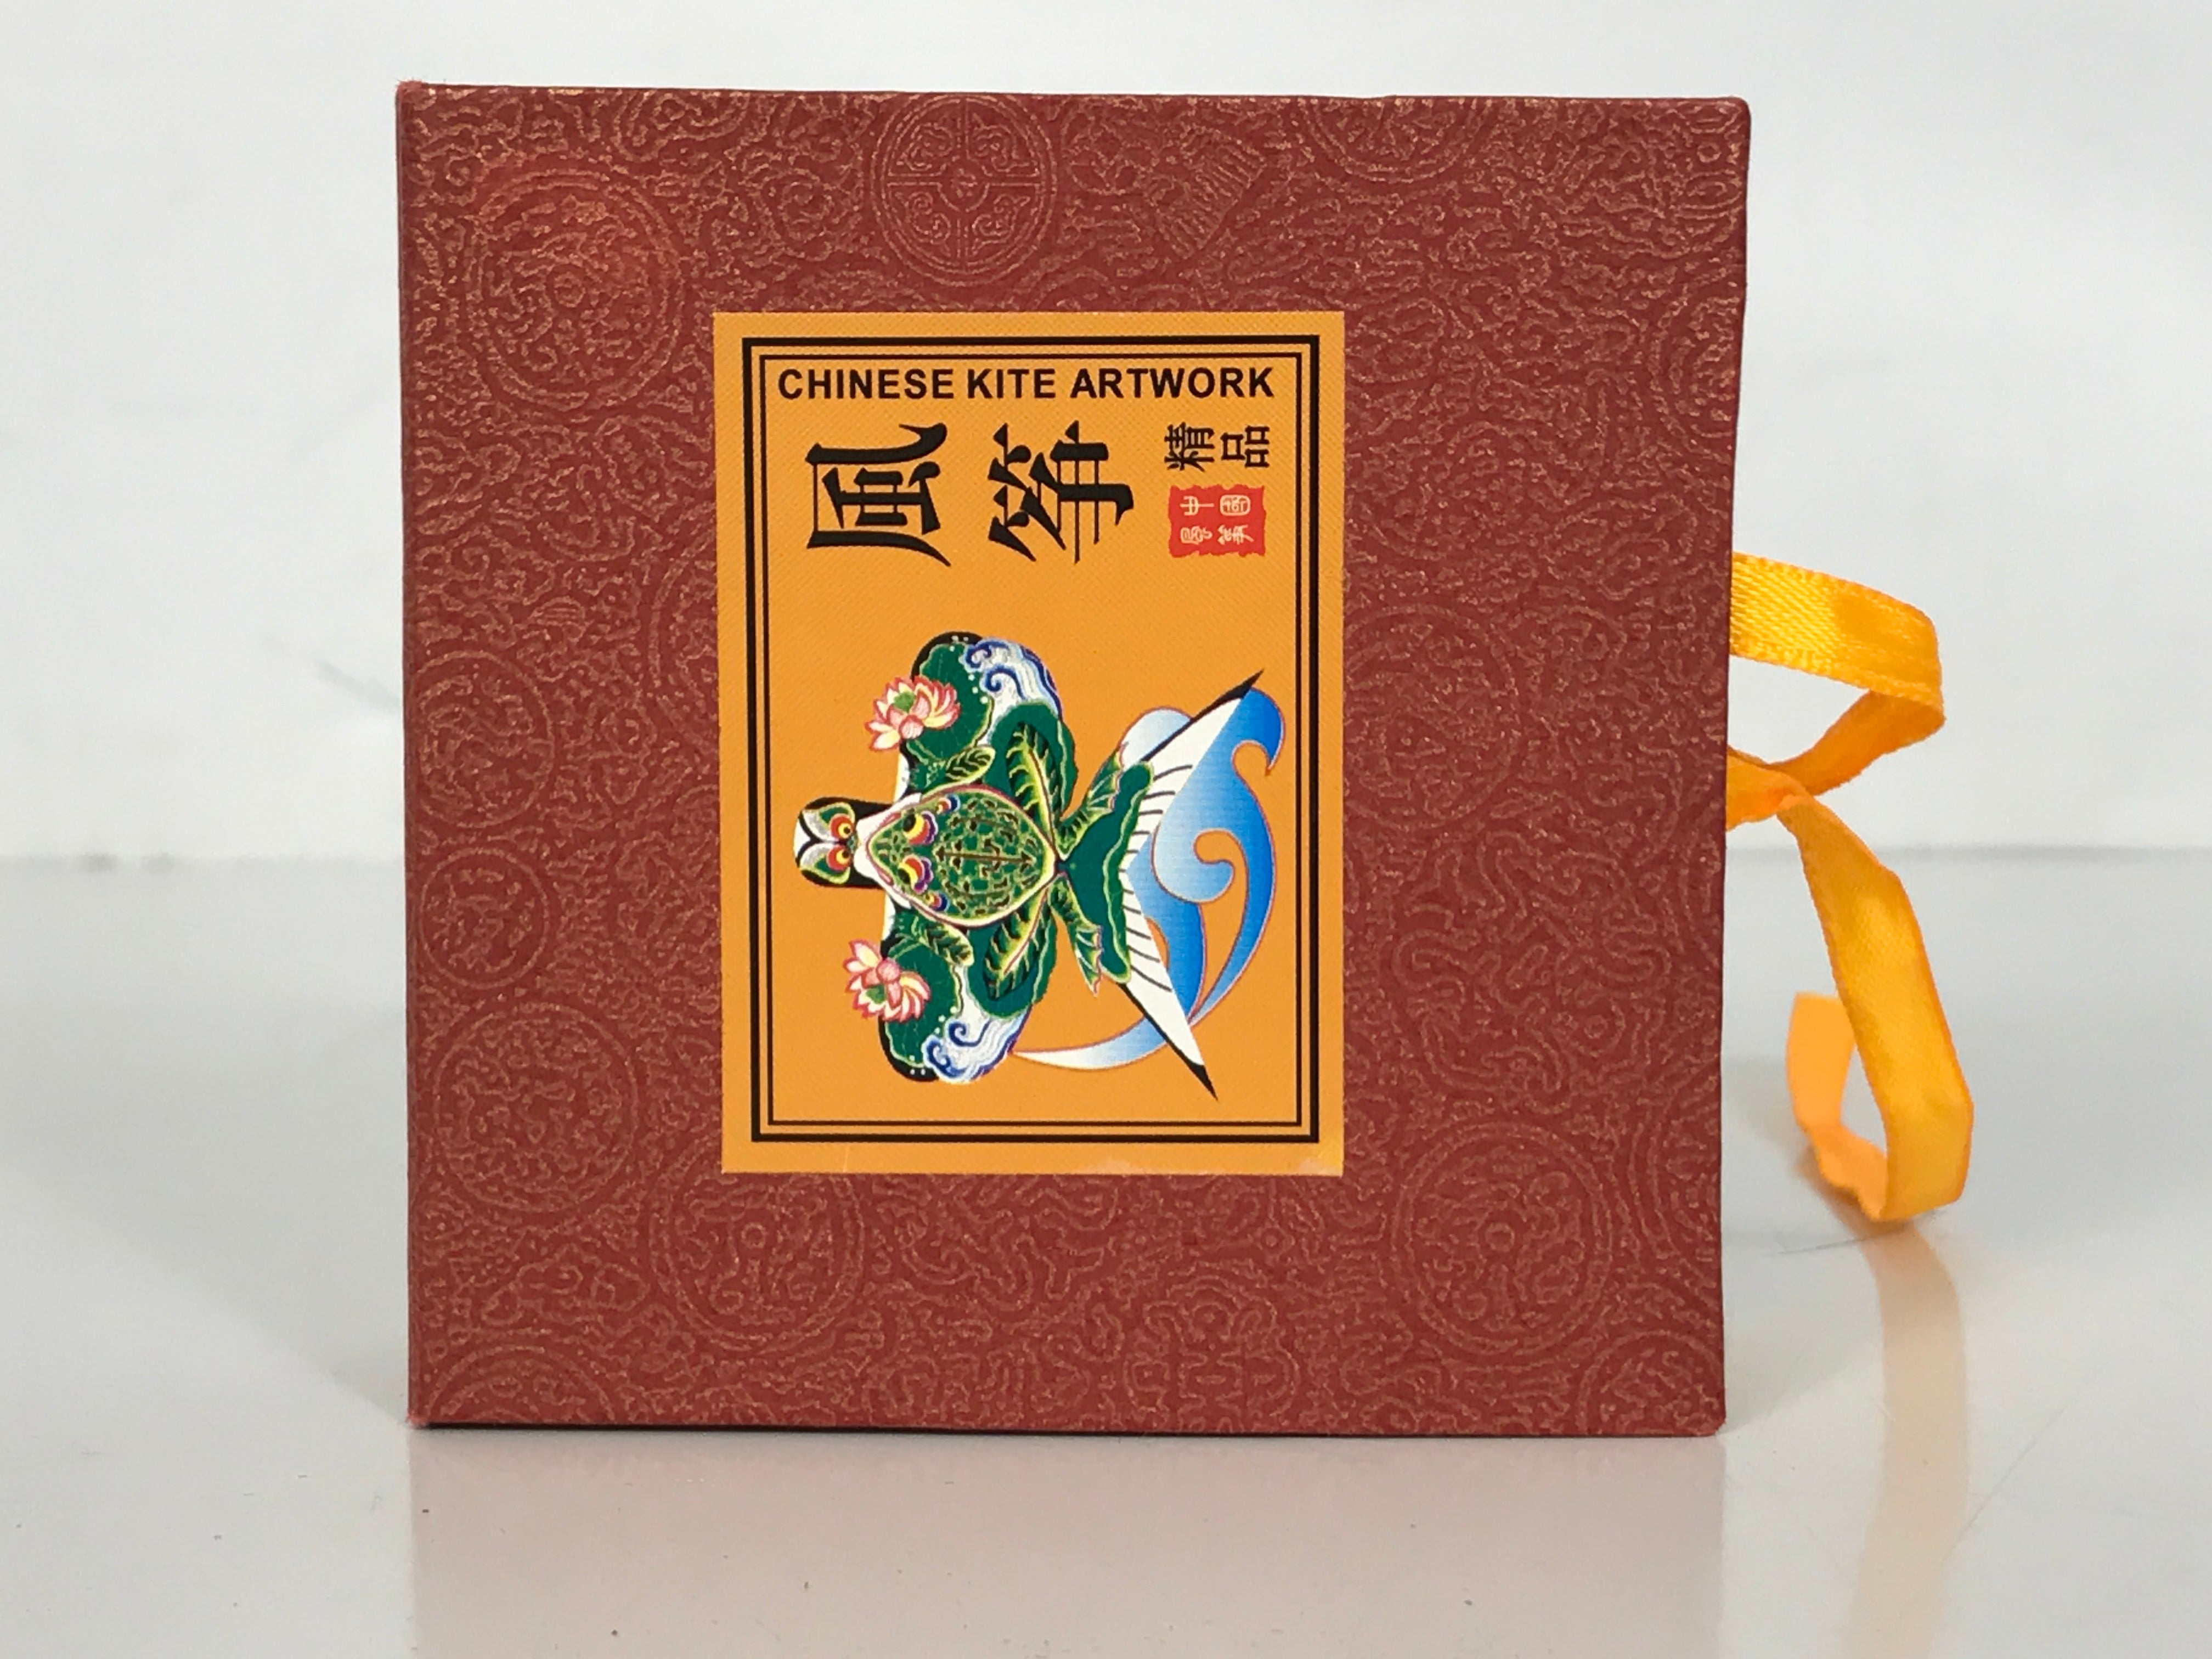 Handmade Chinese Weifang Kite Artwork in Box